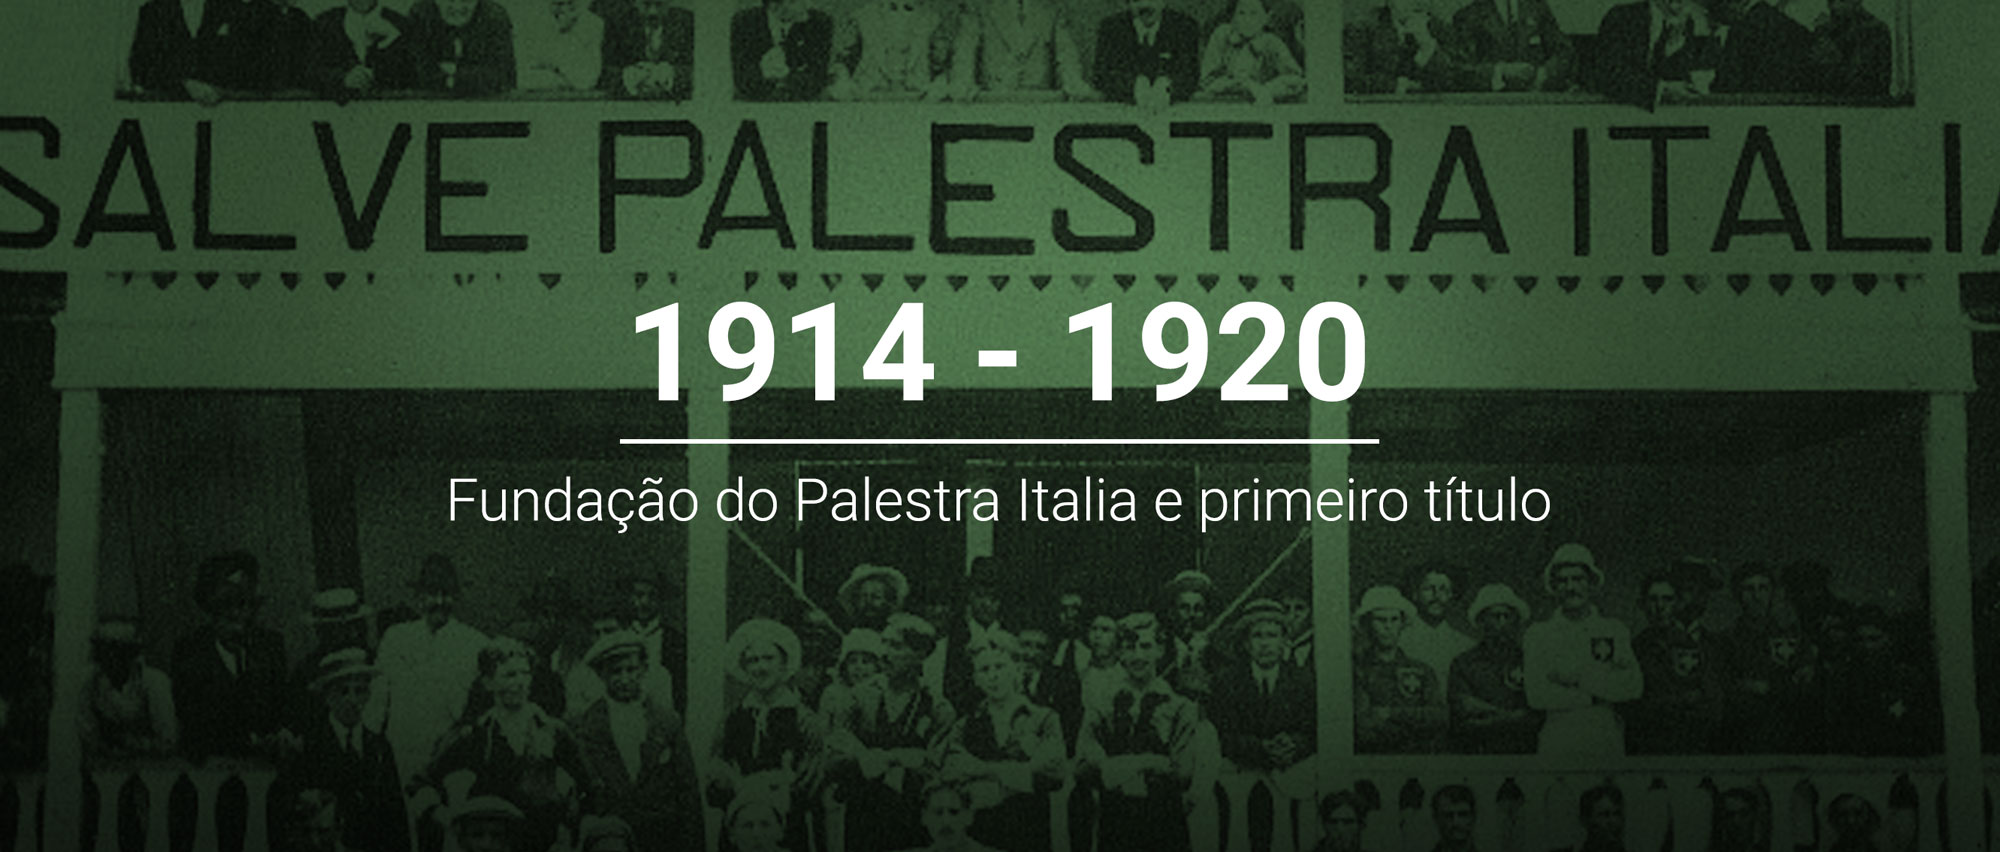 O que o Palmeiras ganhou em 1914?